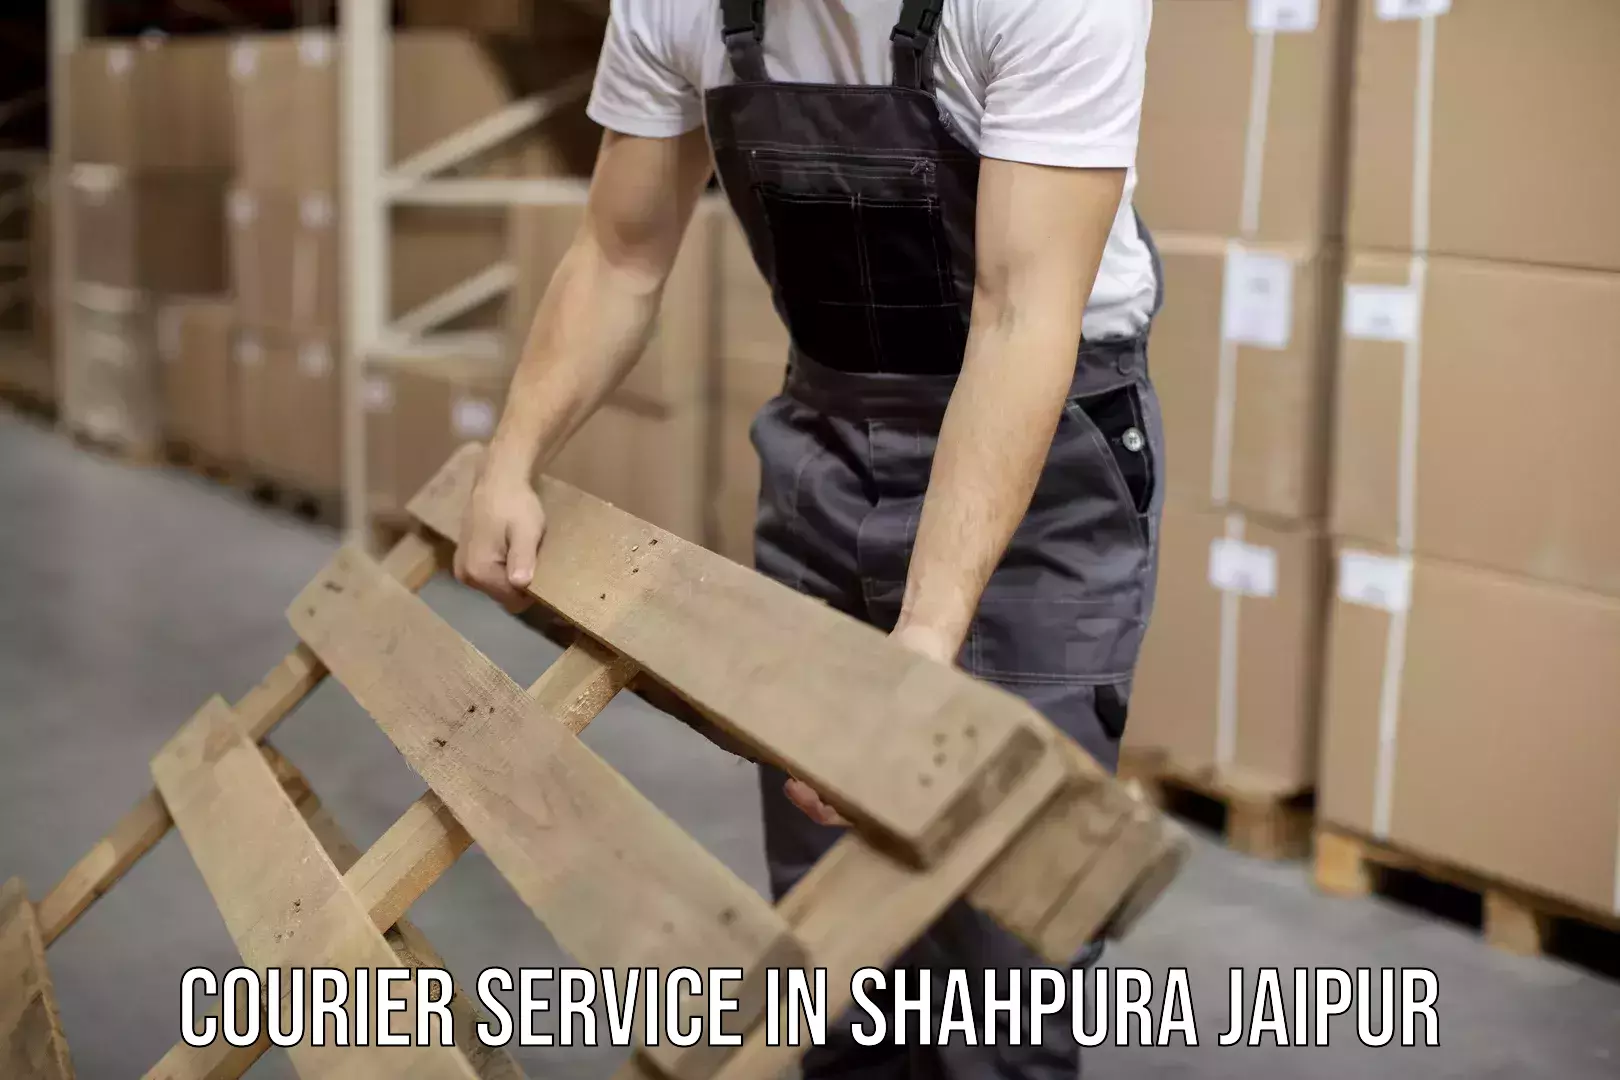 High-efficiency logistics in Shahpura Jaipur